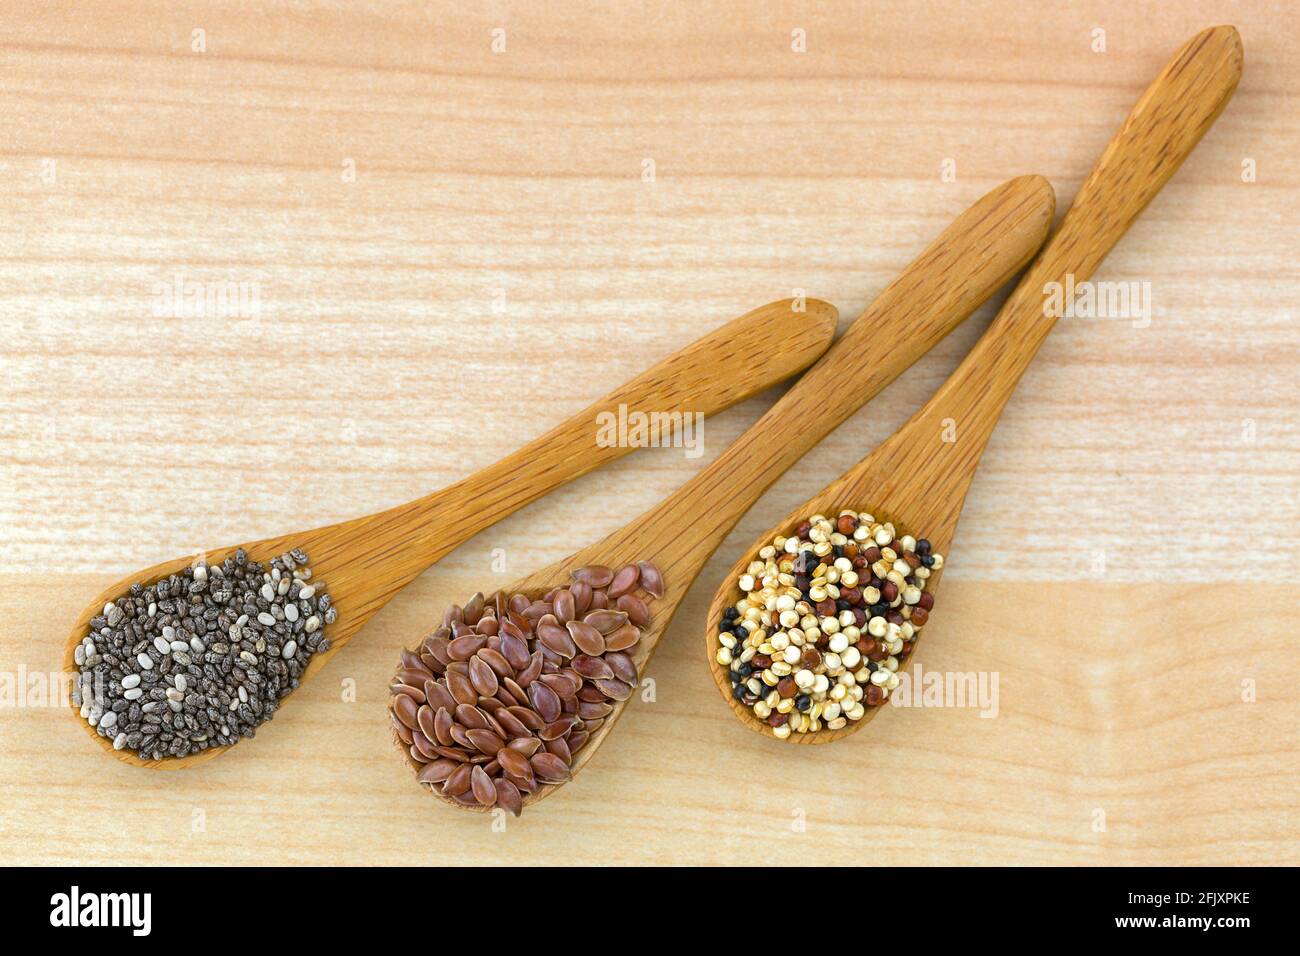 Graines de Chia séchées, graines de lin, graines de quinoa mélange de trois couleurs sur une cuillère en bois, fond de bois Banque D'Images